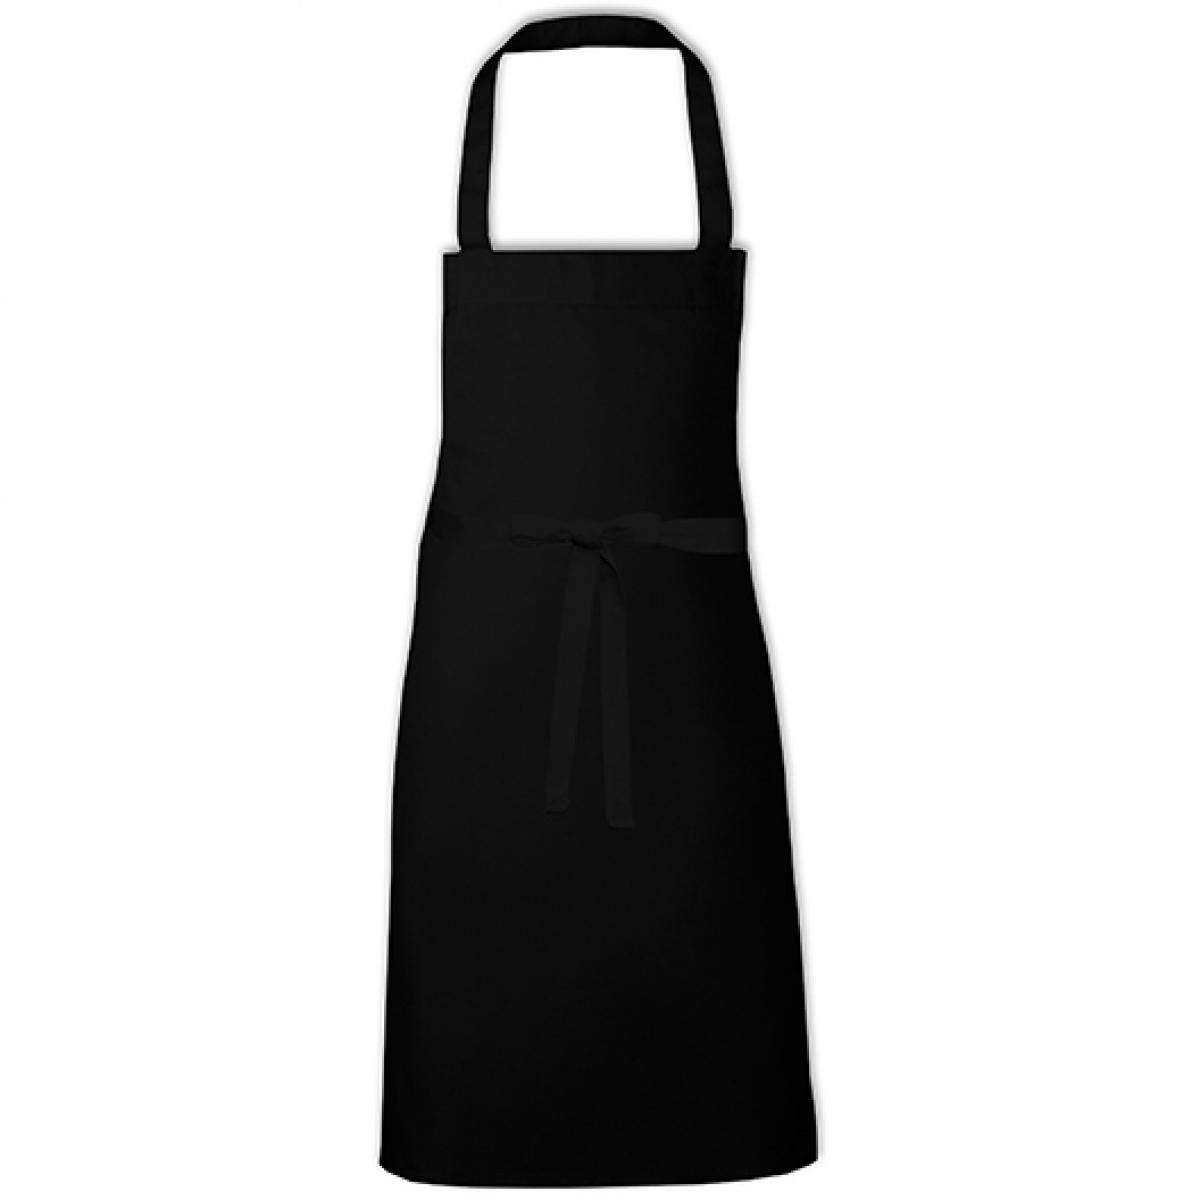 Hersteller: Link Kitchen Wear Herstellernummer: BBQC8070 Artikelbezeichnung: Cotton Barbecue Apron - Grillschürze Farbe: Black